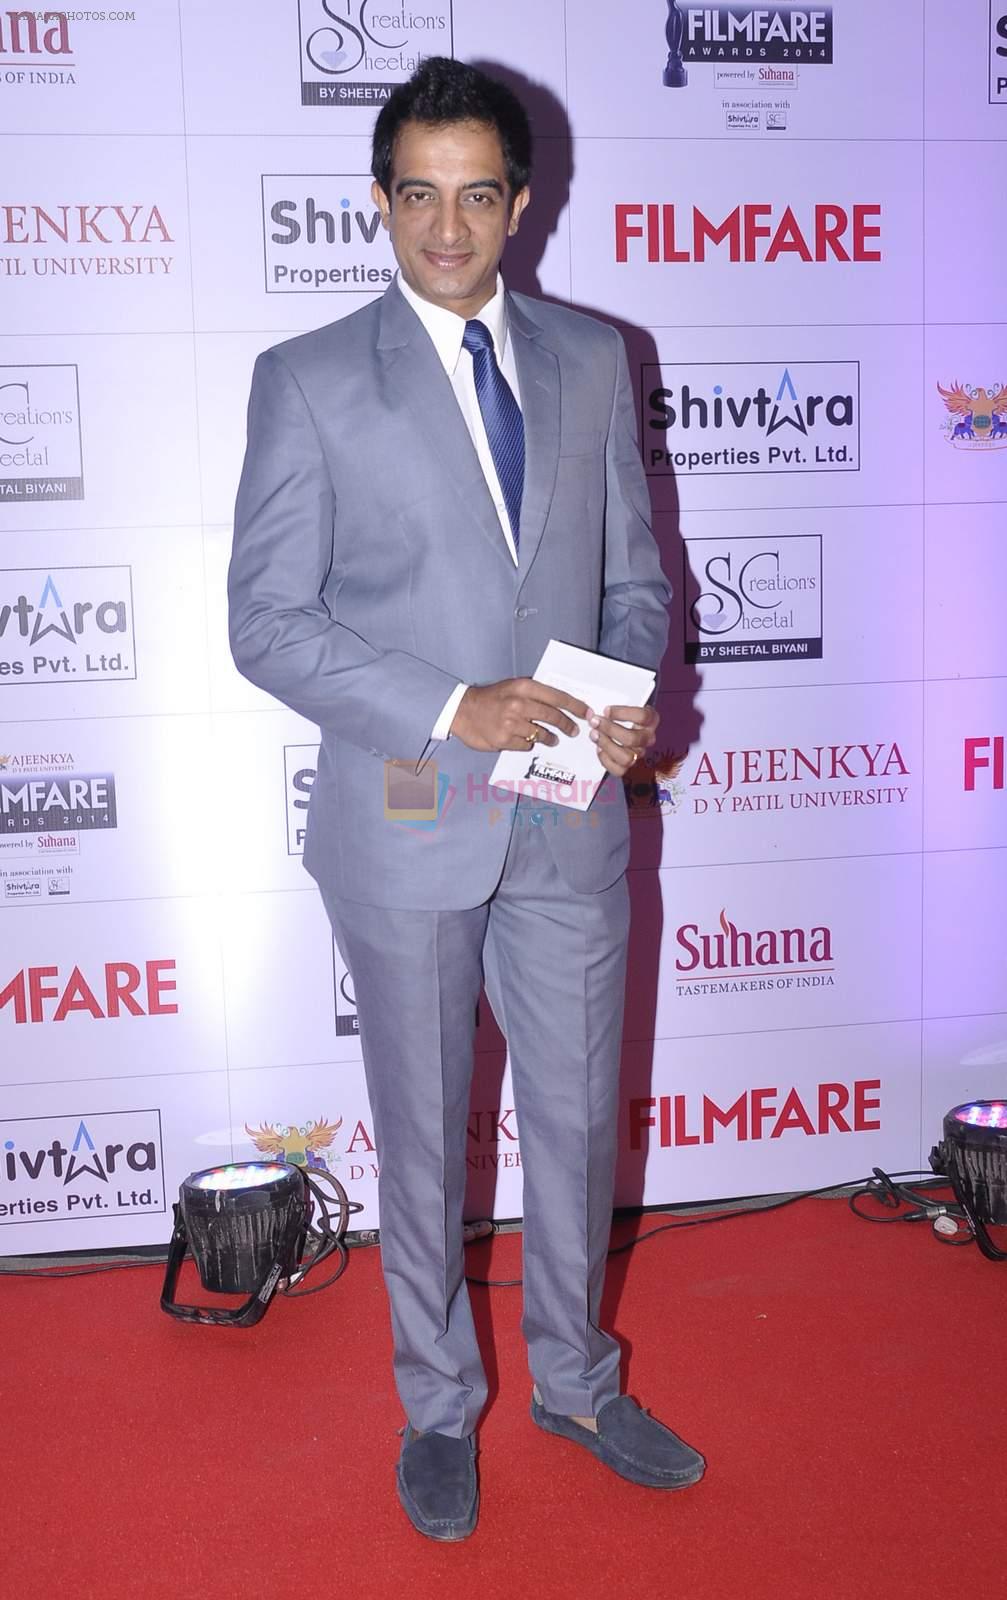 Pankaj Vishnu at the Red Carpet of _Ajeenkya DY Patil University Filmfare Awards